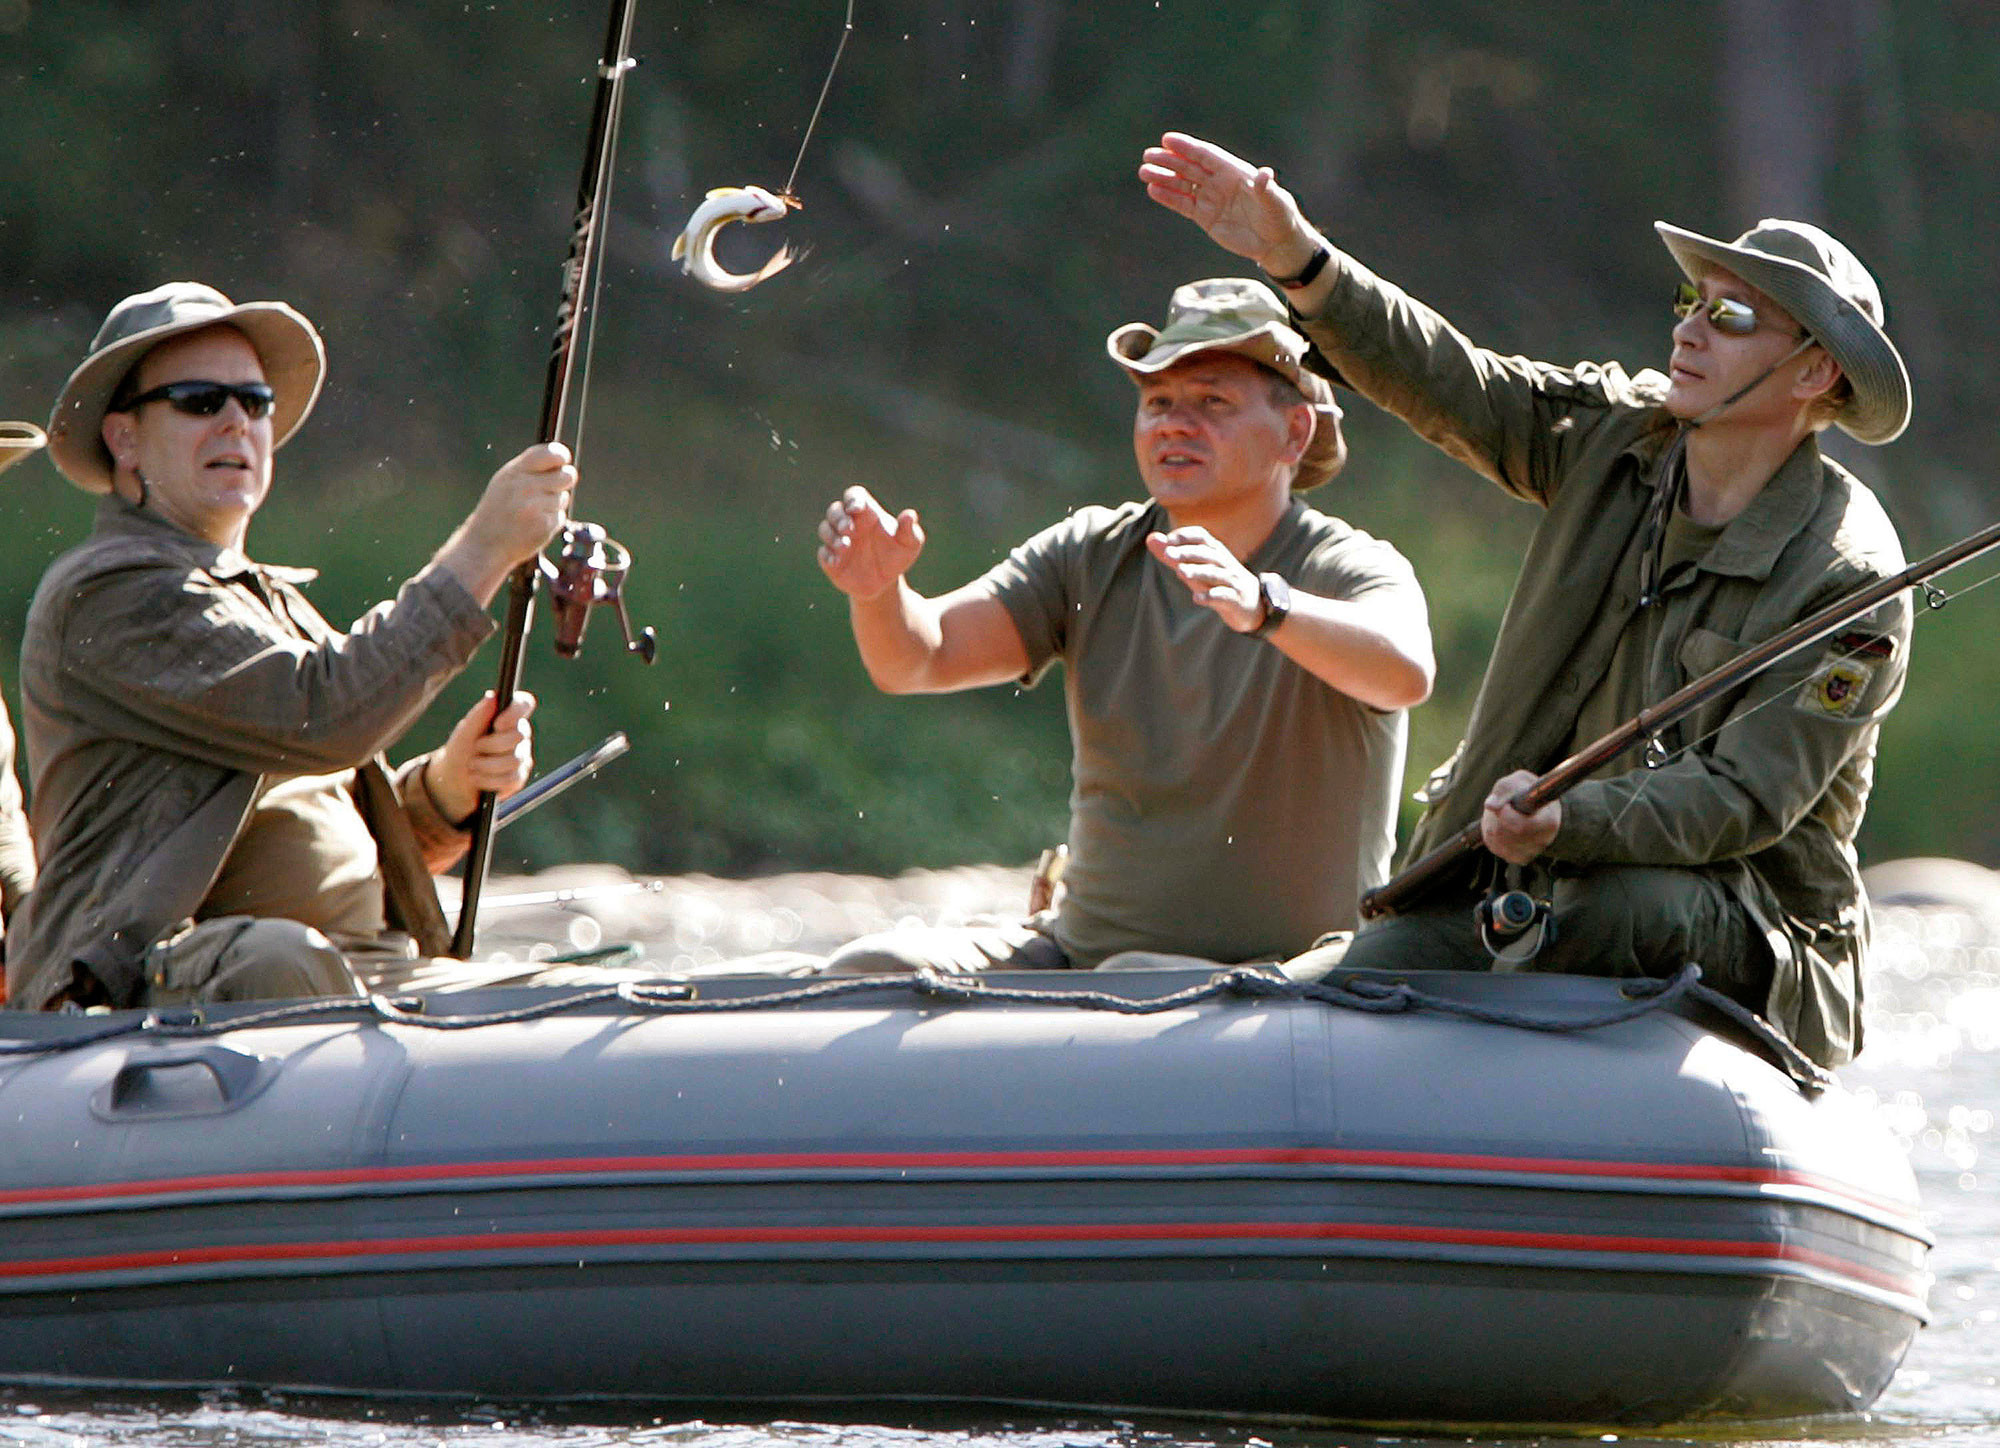 Президент России Владимир Путин, принц Альбер II и министр обороны РФ Сергей Шойгу ловят рыбу на реке Енисей в Сибири 13 августа 2007 года. Фото: © REUTERS/RIA Novosti/KREMLIN (RUSSIA)